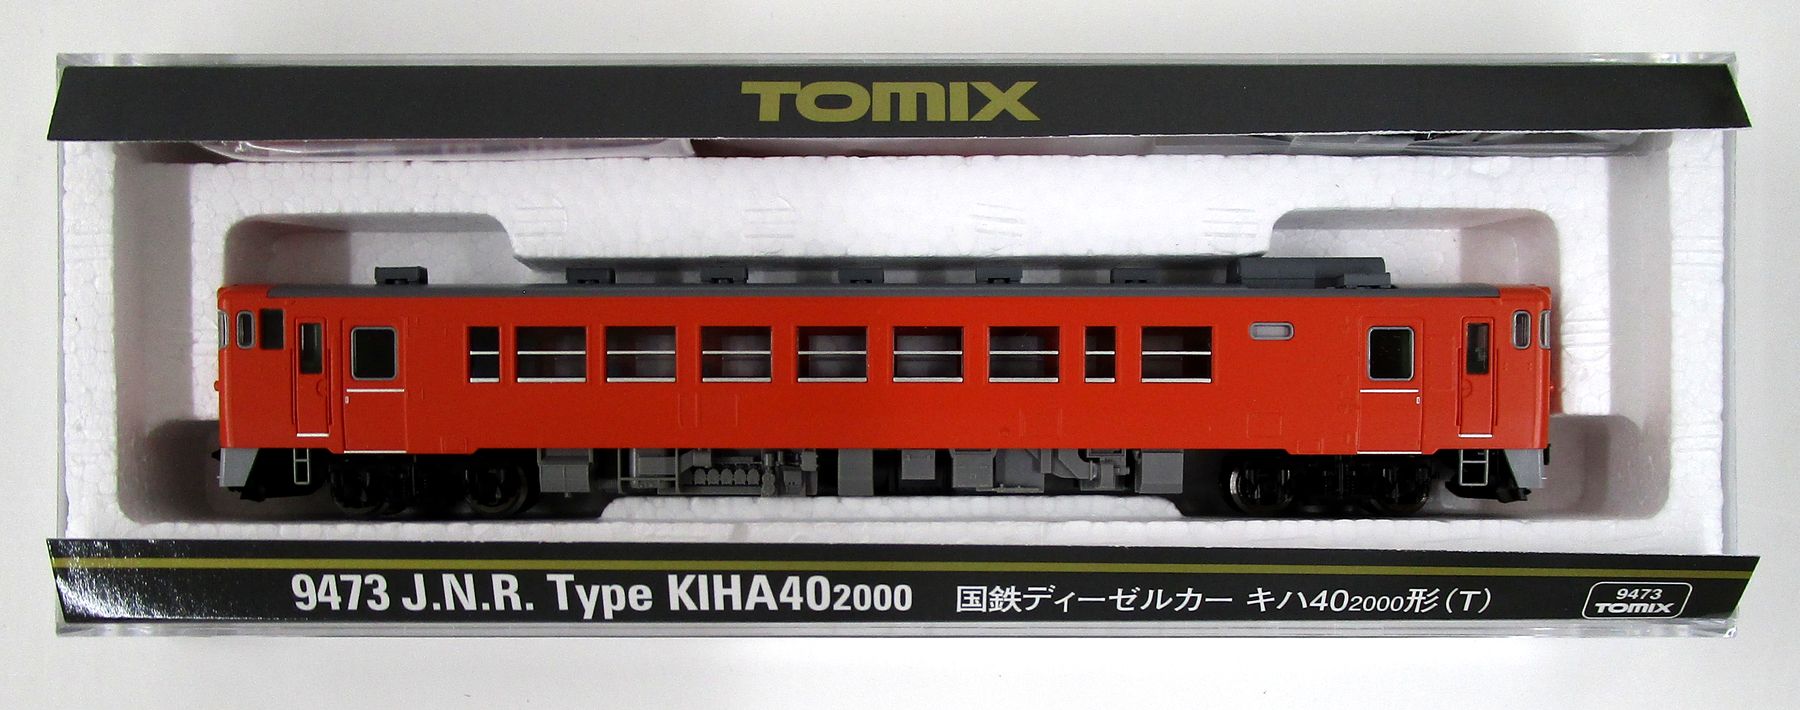 公式]鉄道模型(9473国鉄ディーゼルカー キハ40-2000形(T))商品詳細 ...